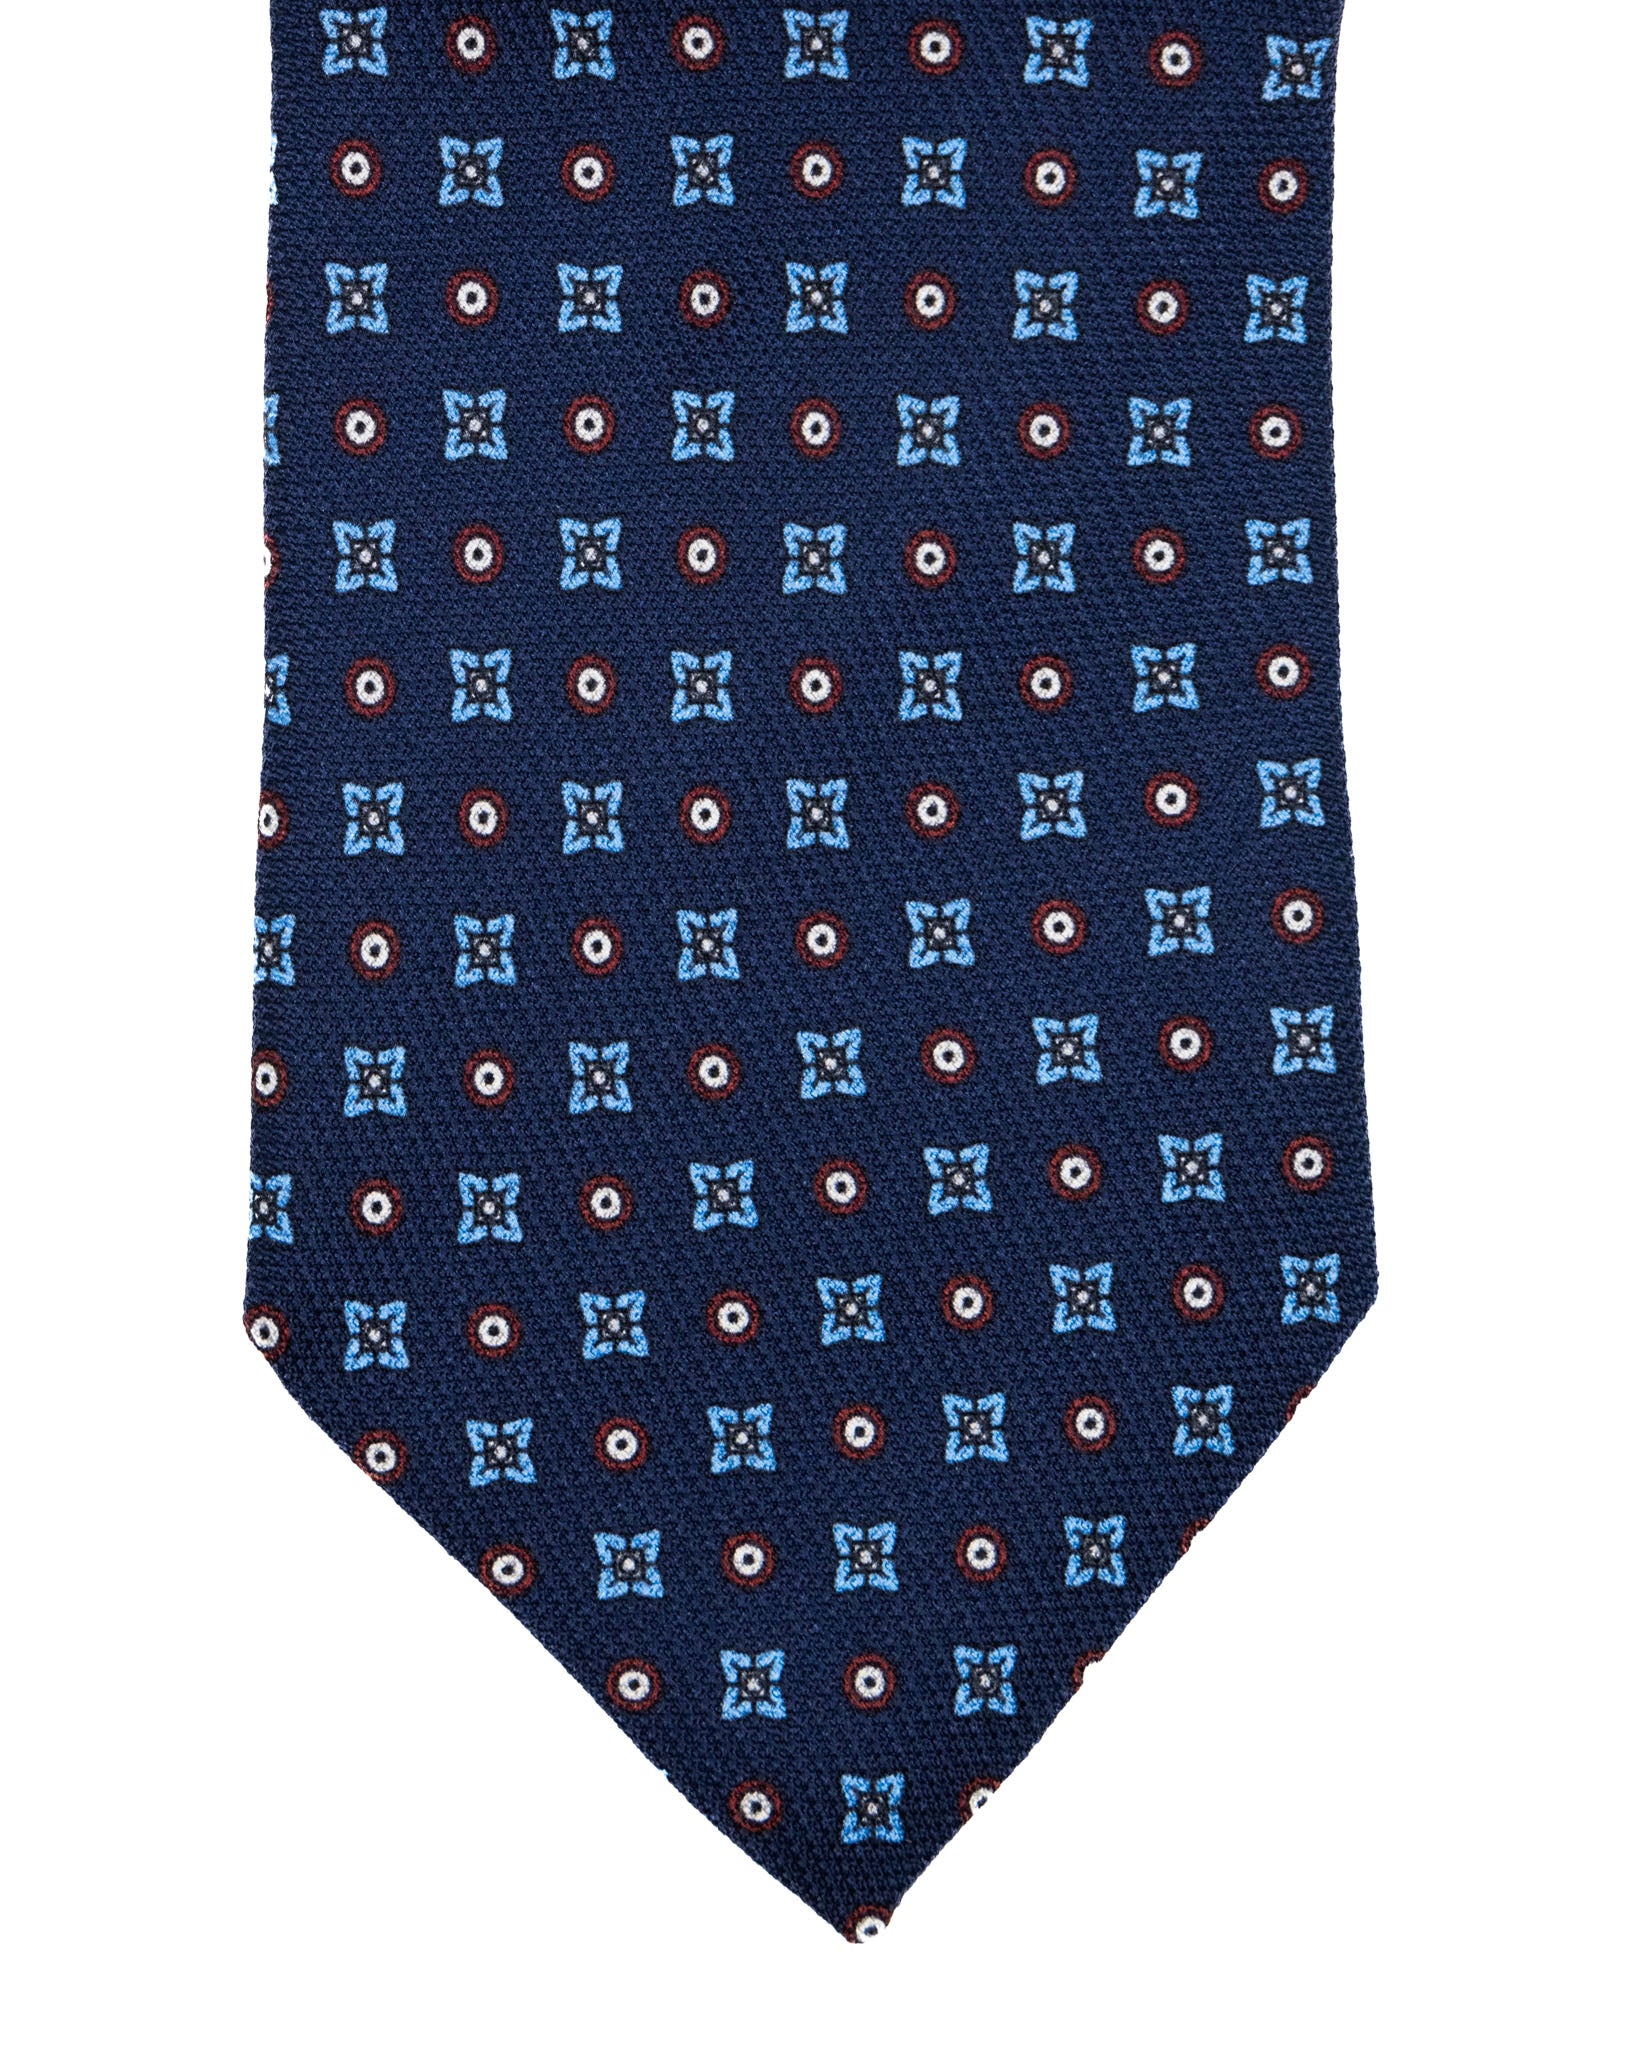 Cravate - en soie bleue à motifs en relief